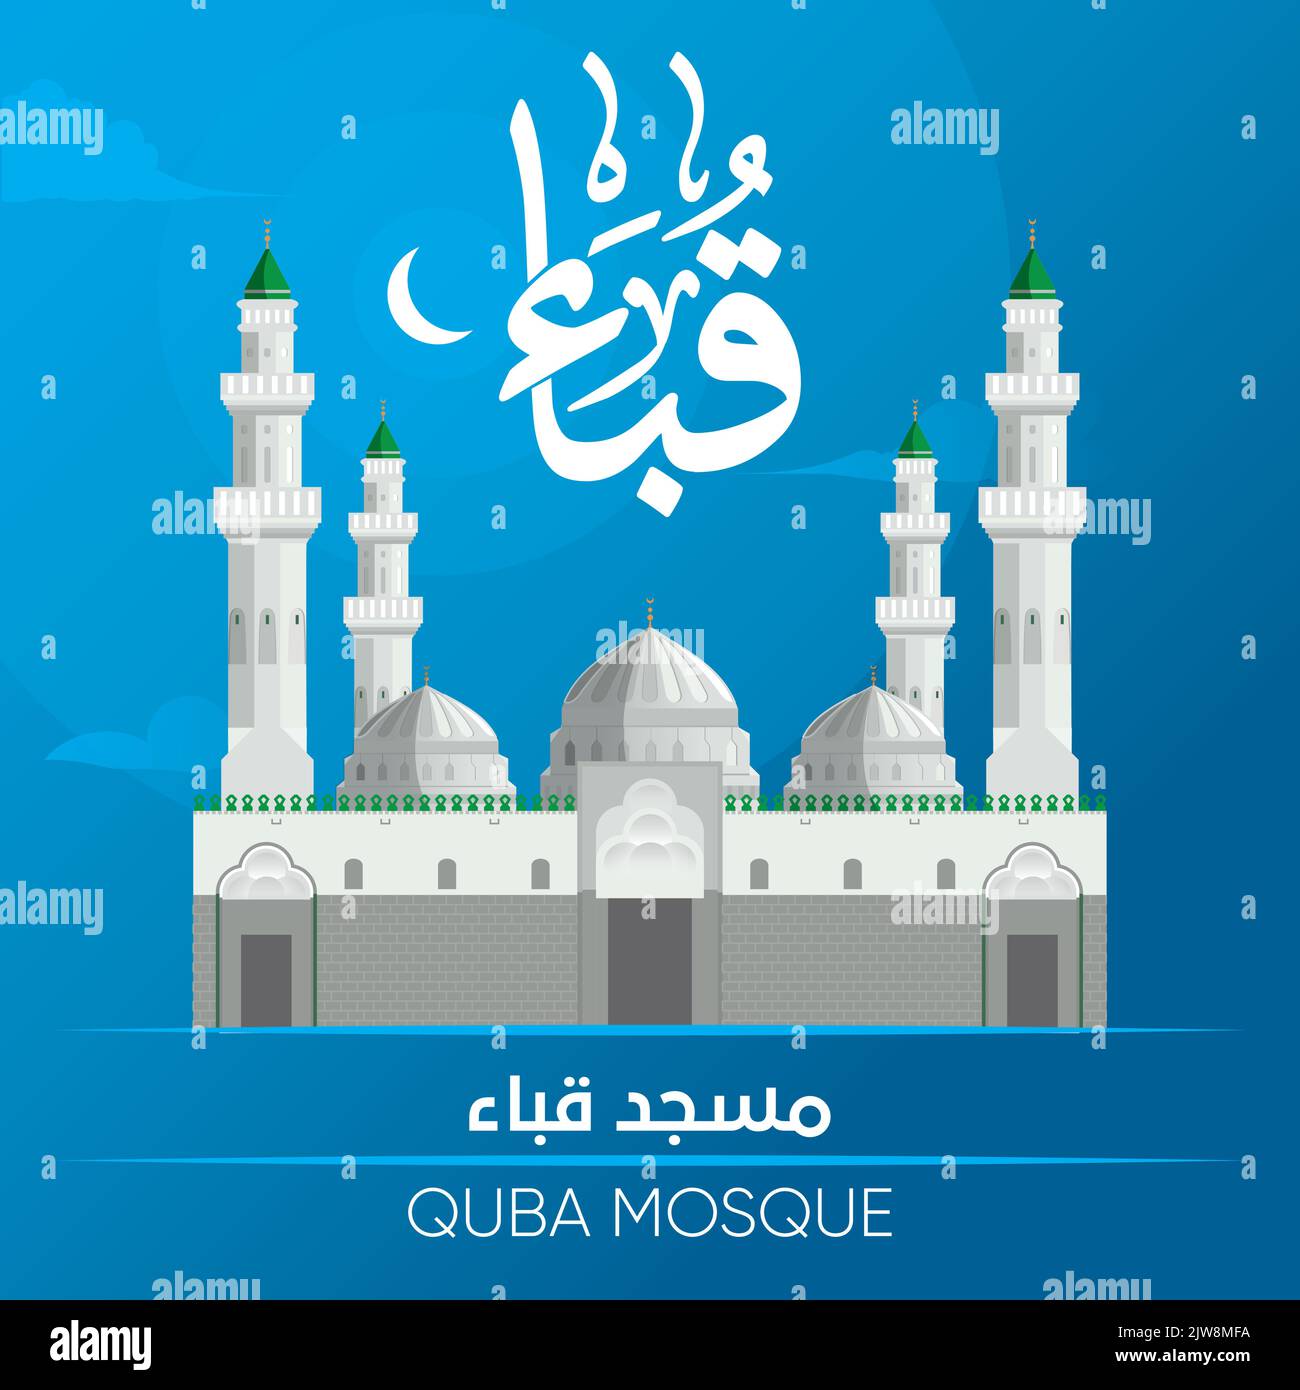 Illustrazione artistica dell'icona 'Moschea di Quba' e del nome della moschea scritto in Thuluth script arabo, al-Masjid An-Nabawi, Medina, Arabia Saudita Illustrazione Vettoriale